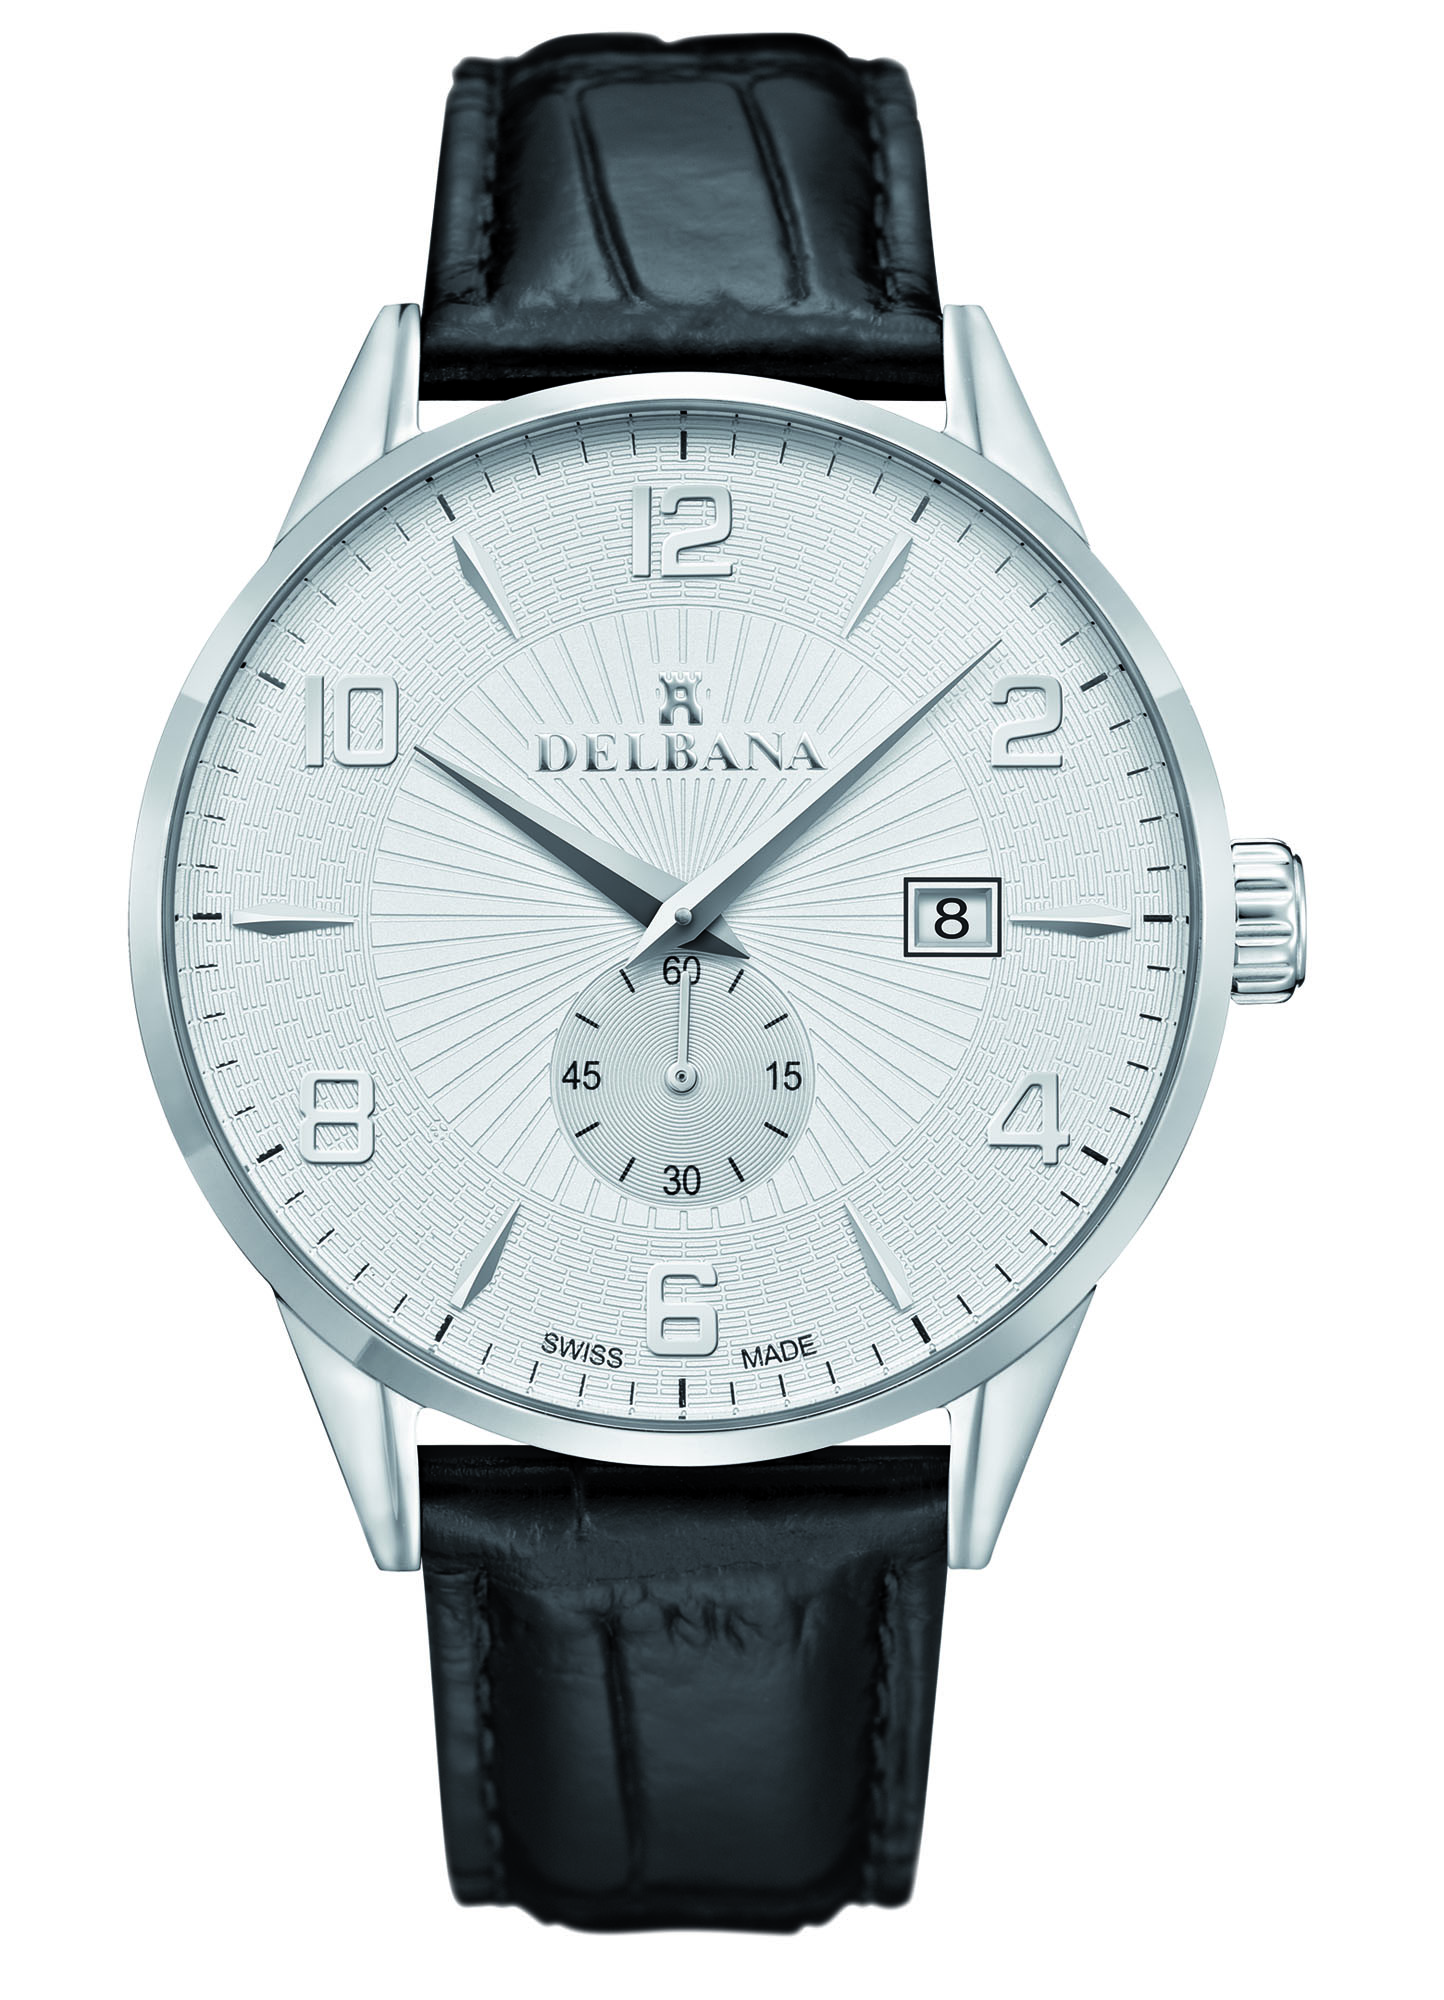 dagboek versieren Aanpassen Delbana Retro. Classic men's dress watch with date.